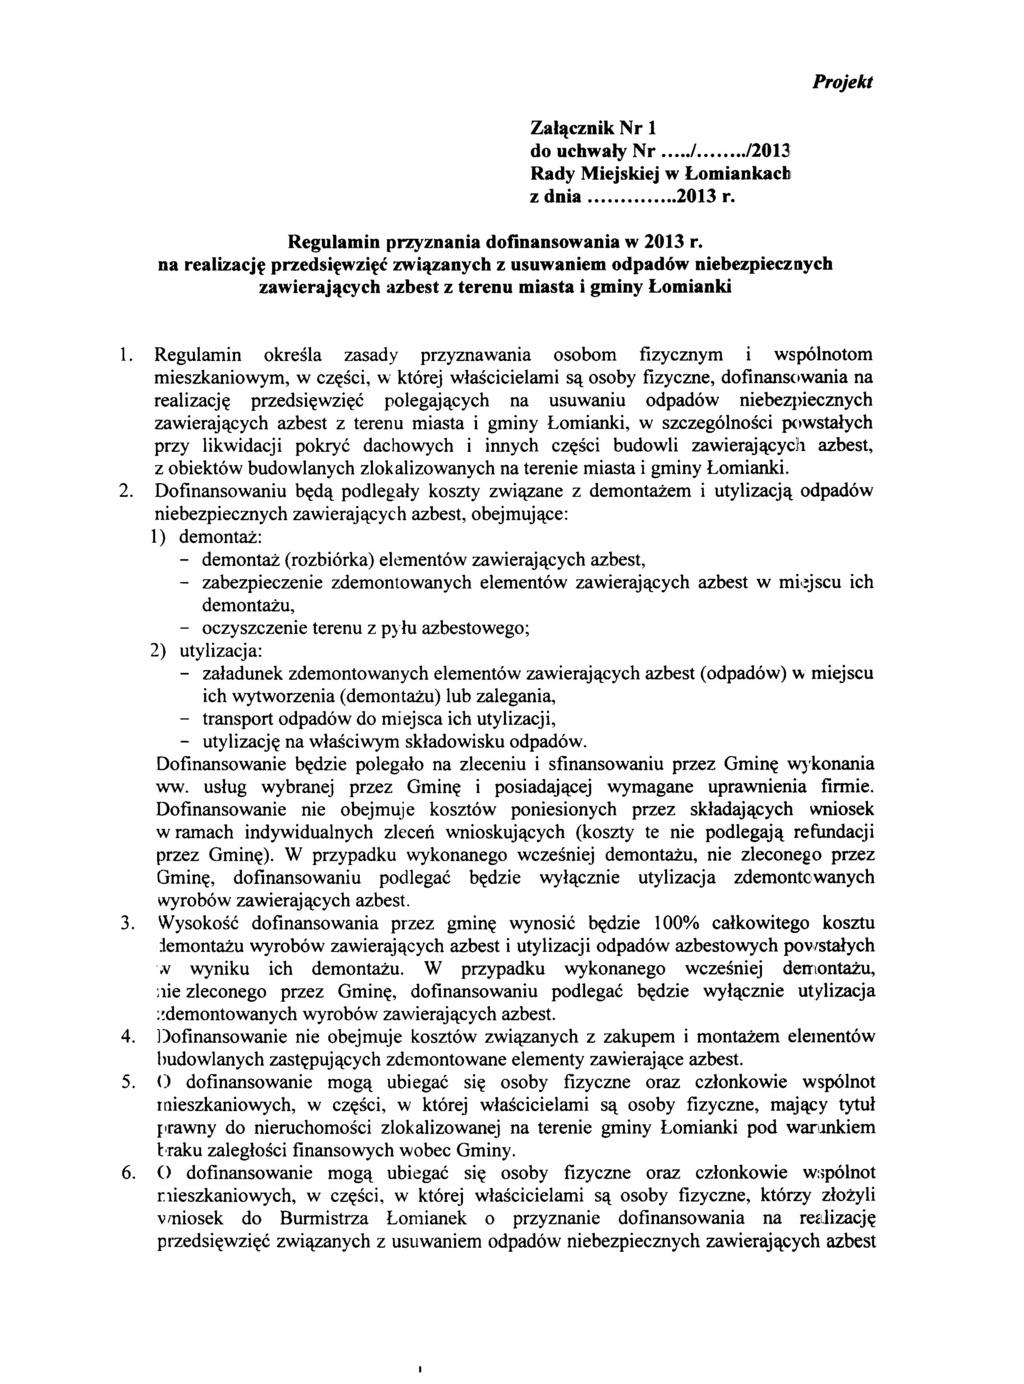 Projekt Załącznik Nr 1 do uchwały Nr././2013 Rady Miejskiej w Łomlankach z dnia 2013 r. Regulamin przyznania dofinansowania w 2013 r.